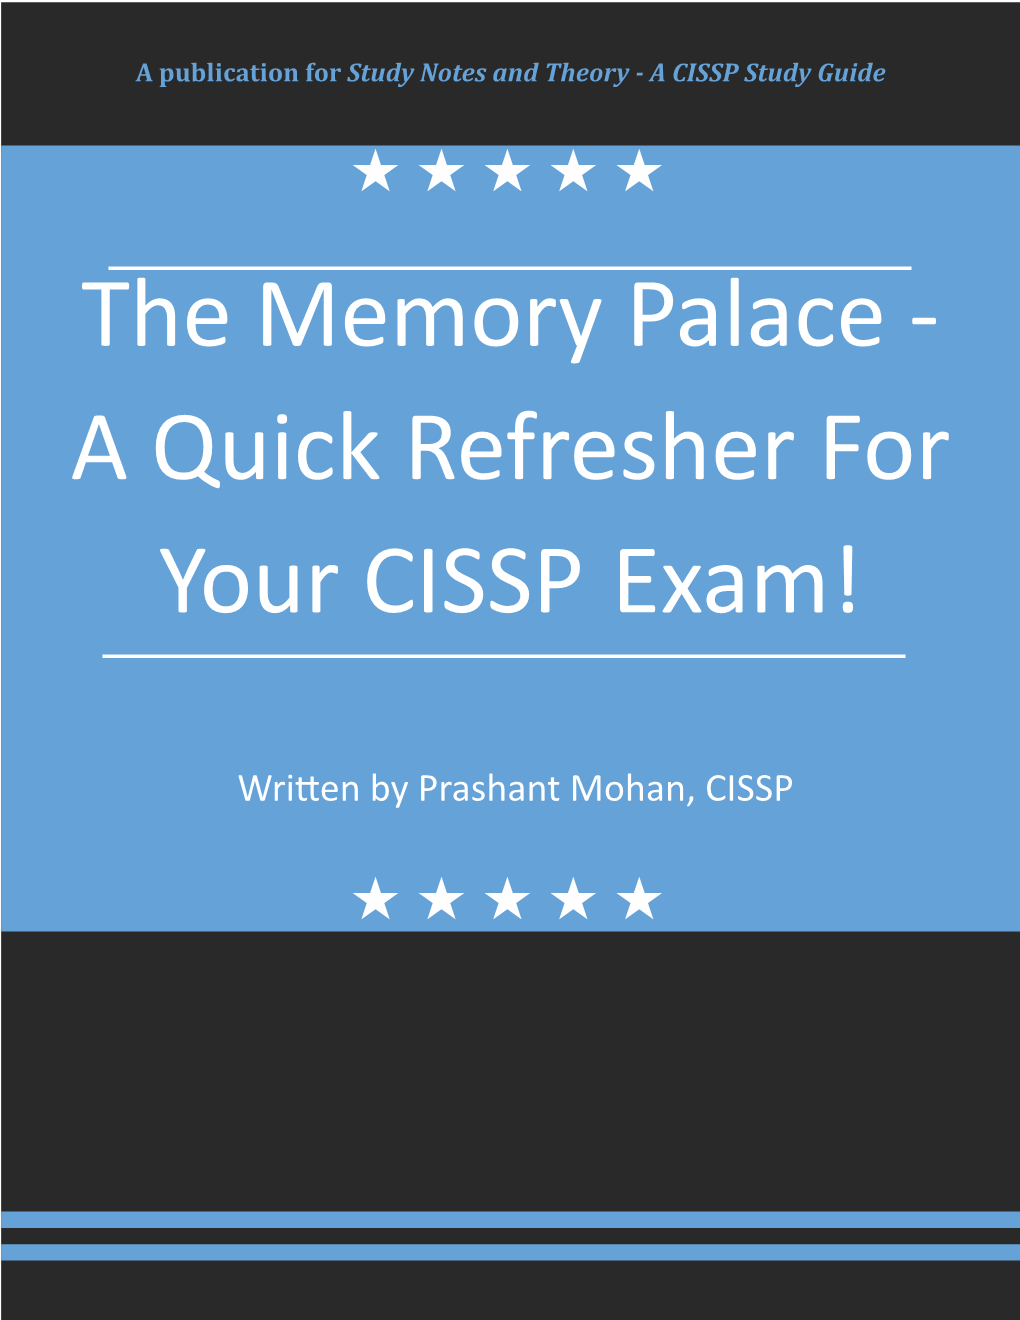 A CISSP Study Guide